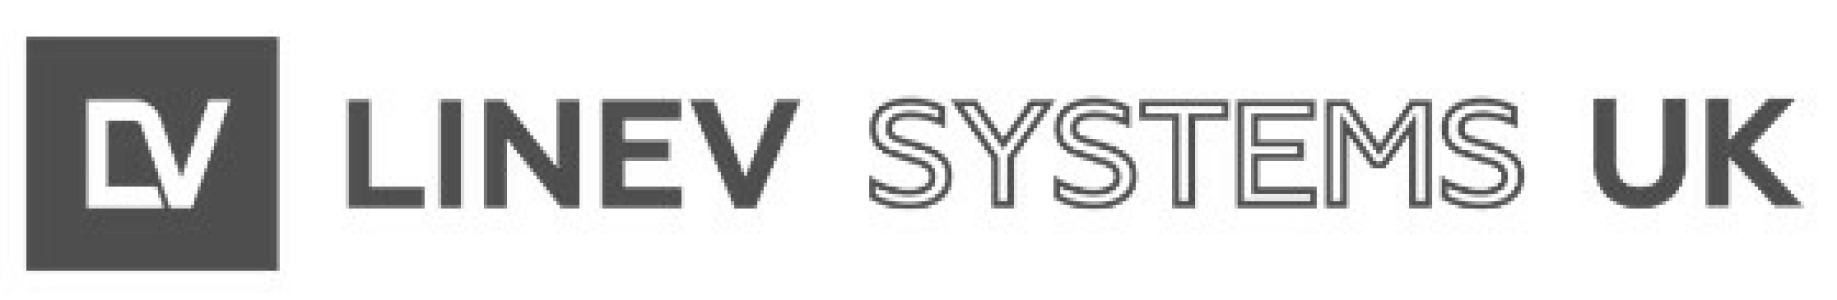 LINEV Systems UK Ltd